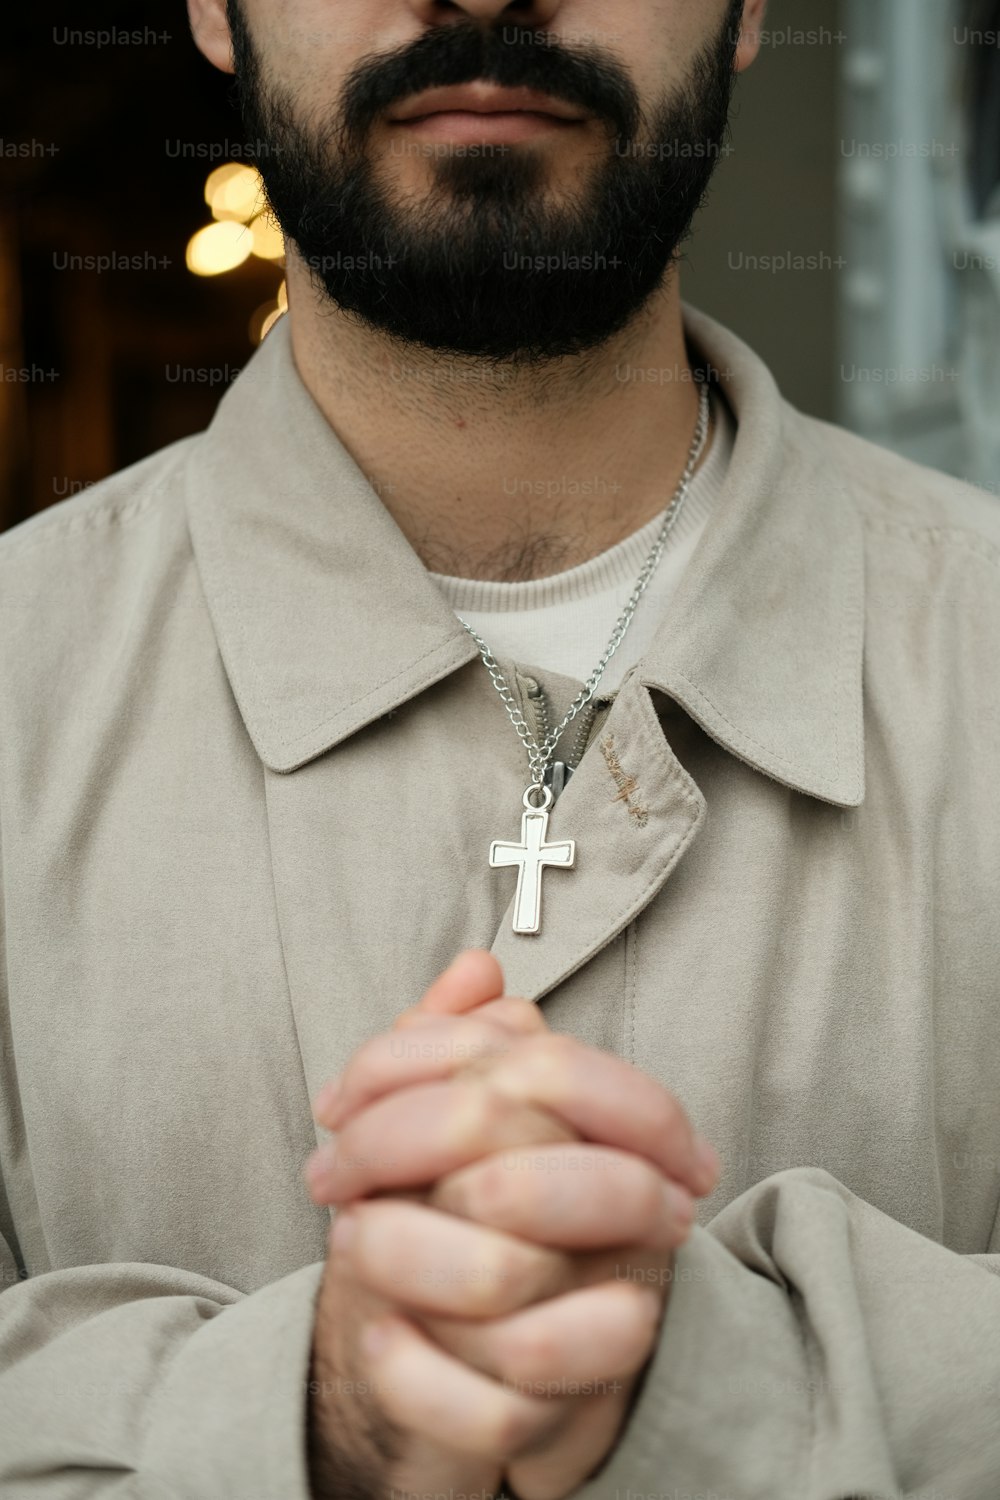 Ein Mann mit Bart trägt eine Kreuzkette